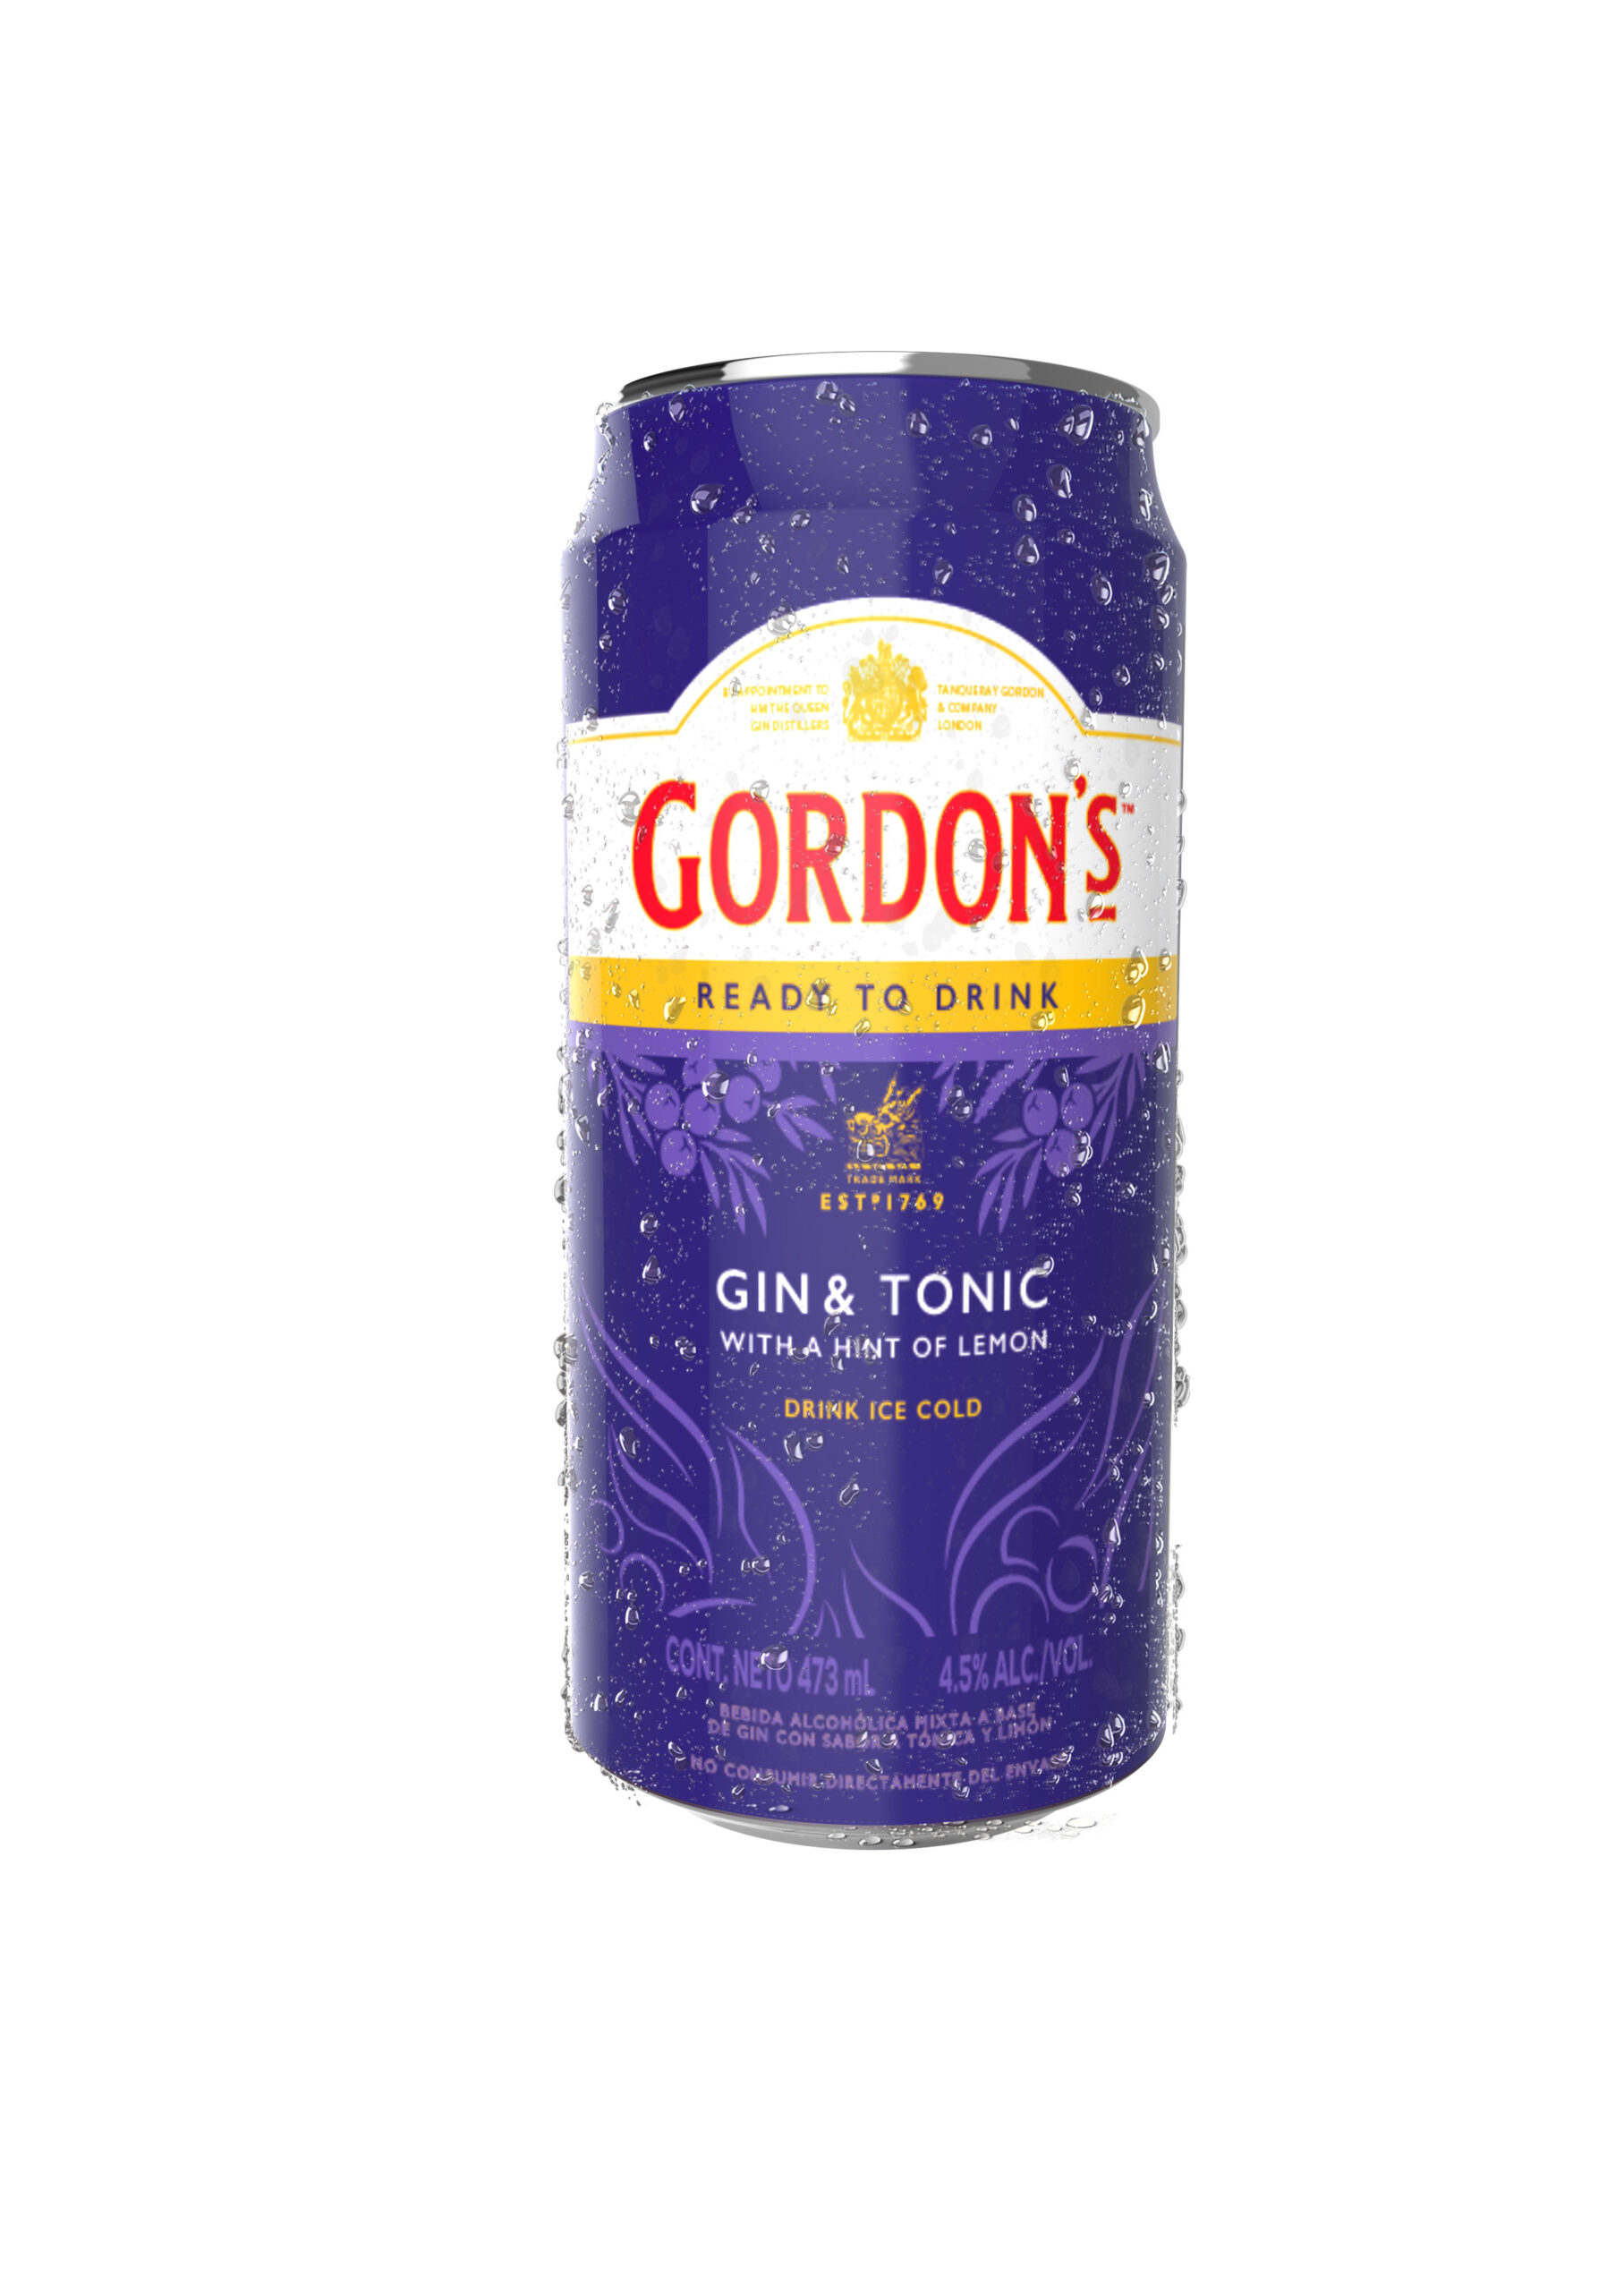 Gordon’s lanza un nuevo Gin & Tonic listo para tomar